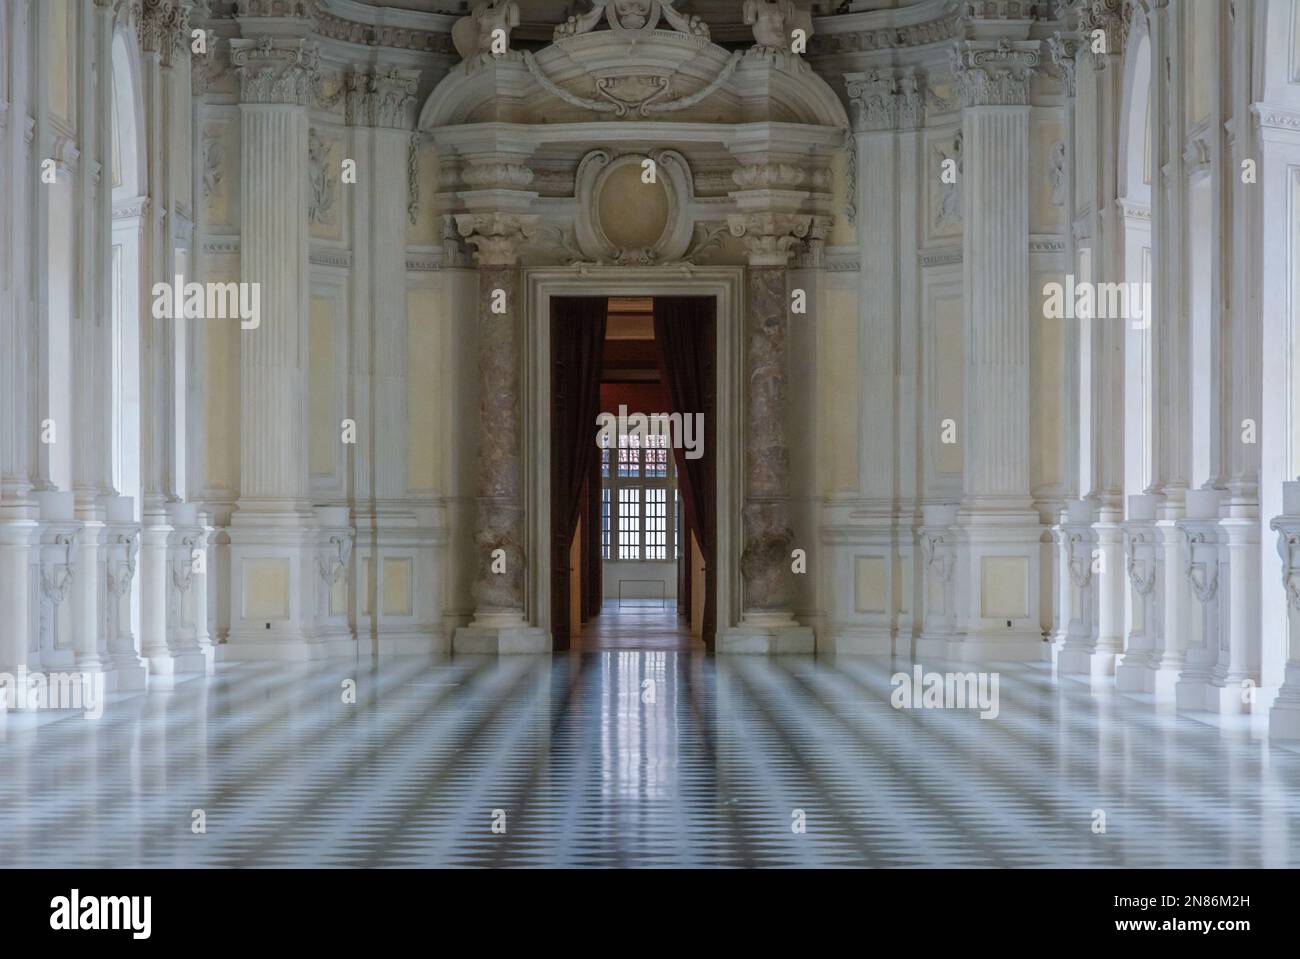 La Grande Sala di Palazzo di Venaria - capolavoro architettonico del 18th° secolo - Venaria reale, Torino, Piemonte, Italia settentrionale, Europa - Foto Stock